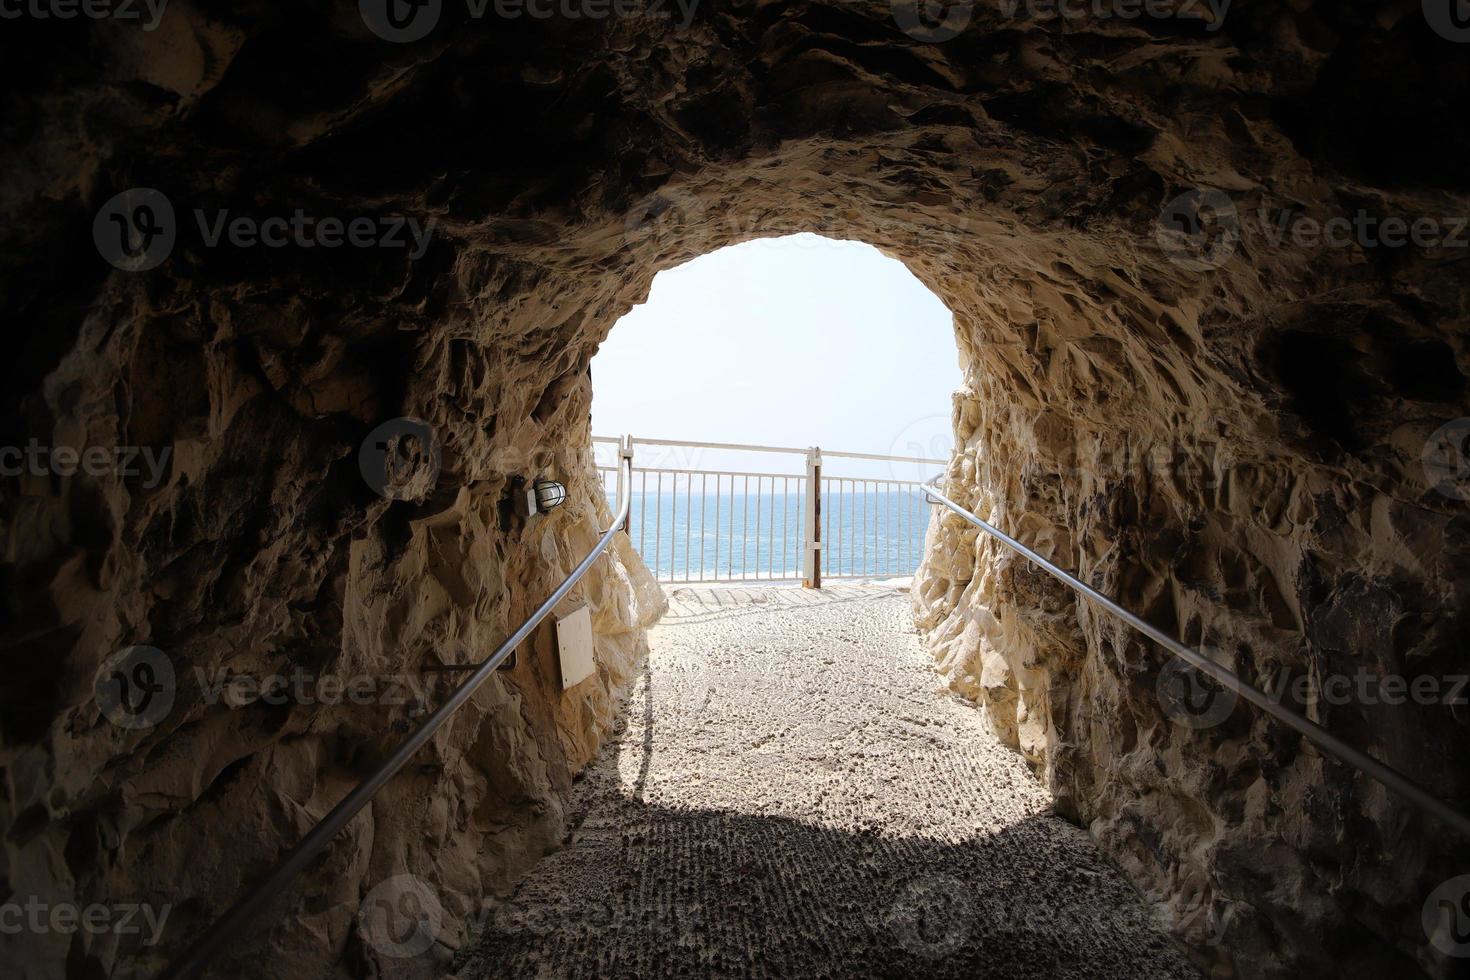 grutas en los acantilados calcáreos a orillas del mar mediterráneo. foto